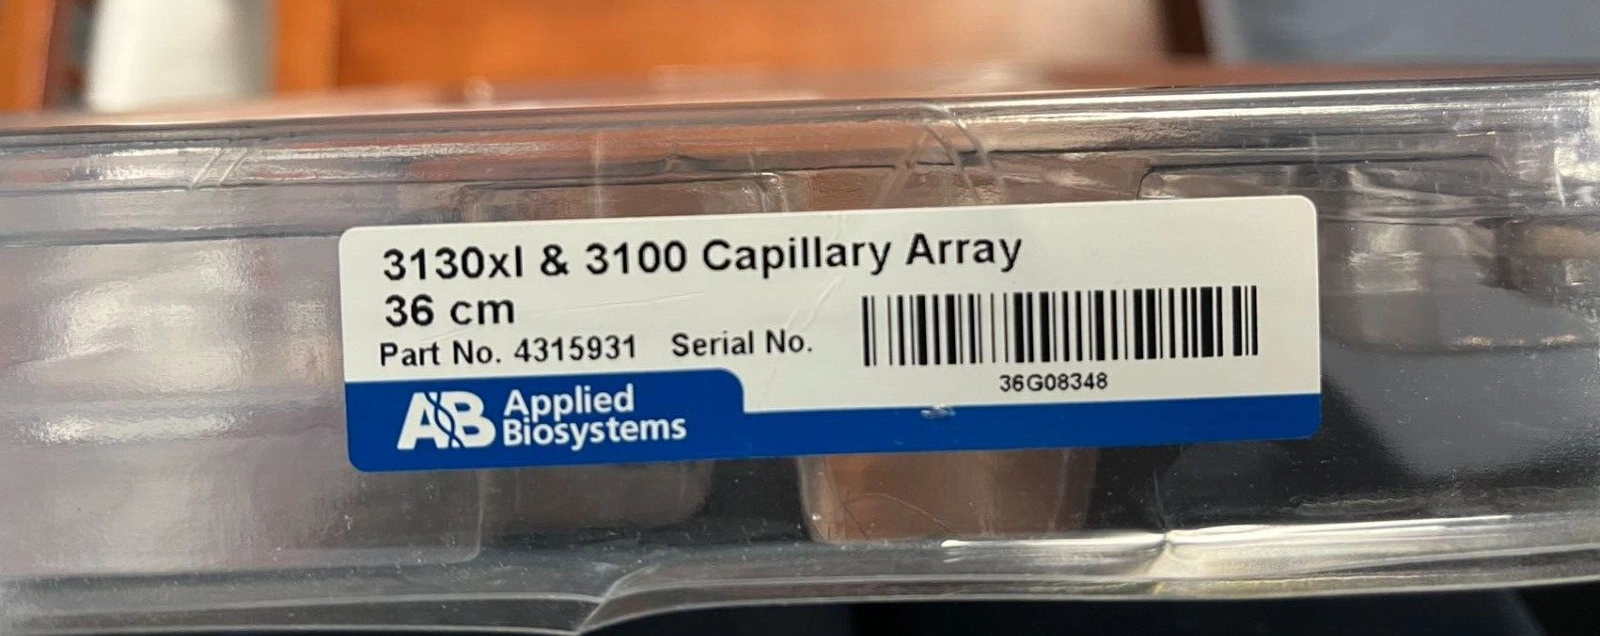 Applied Biosystems 3130xl & 3100 Capillary Array 3